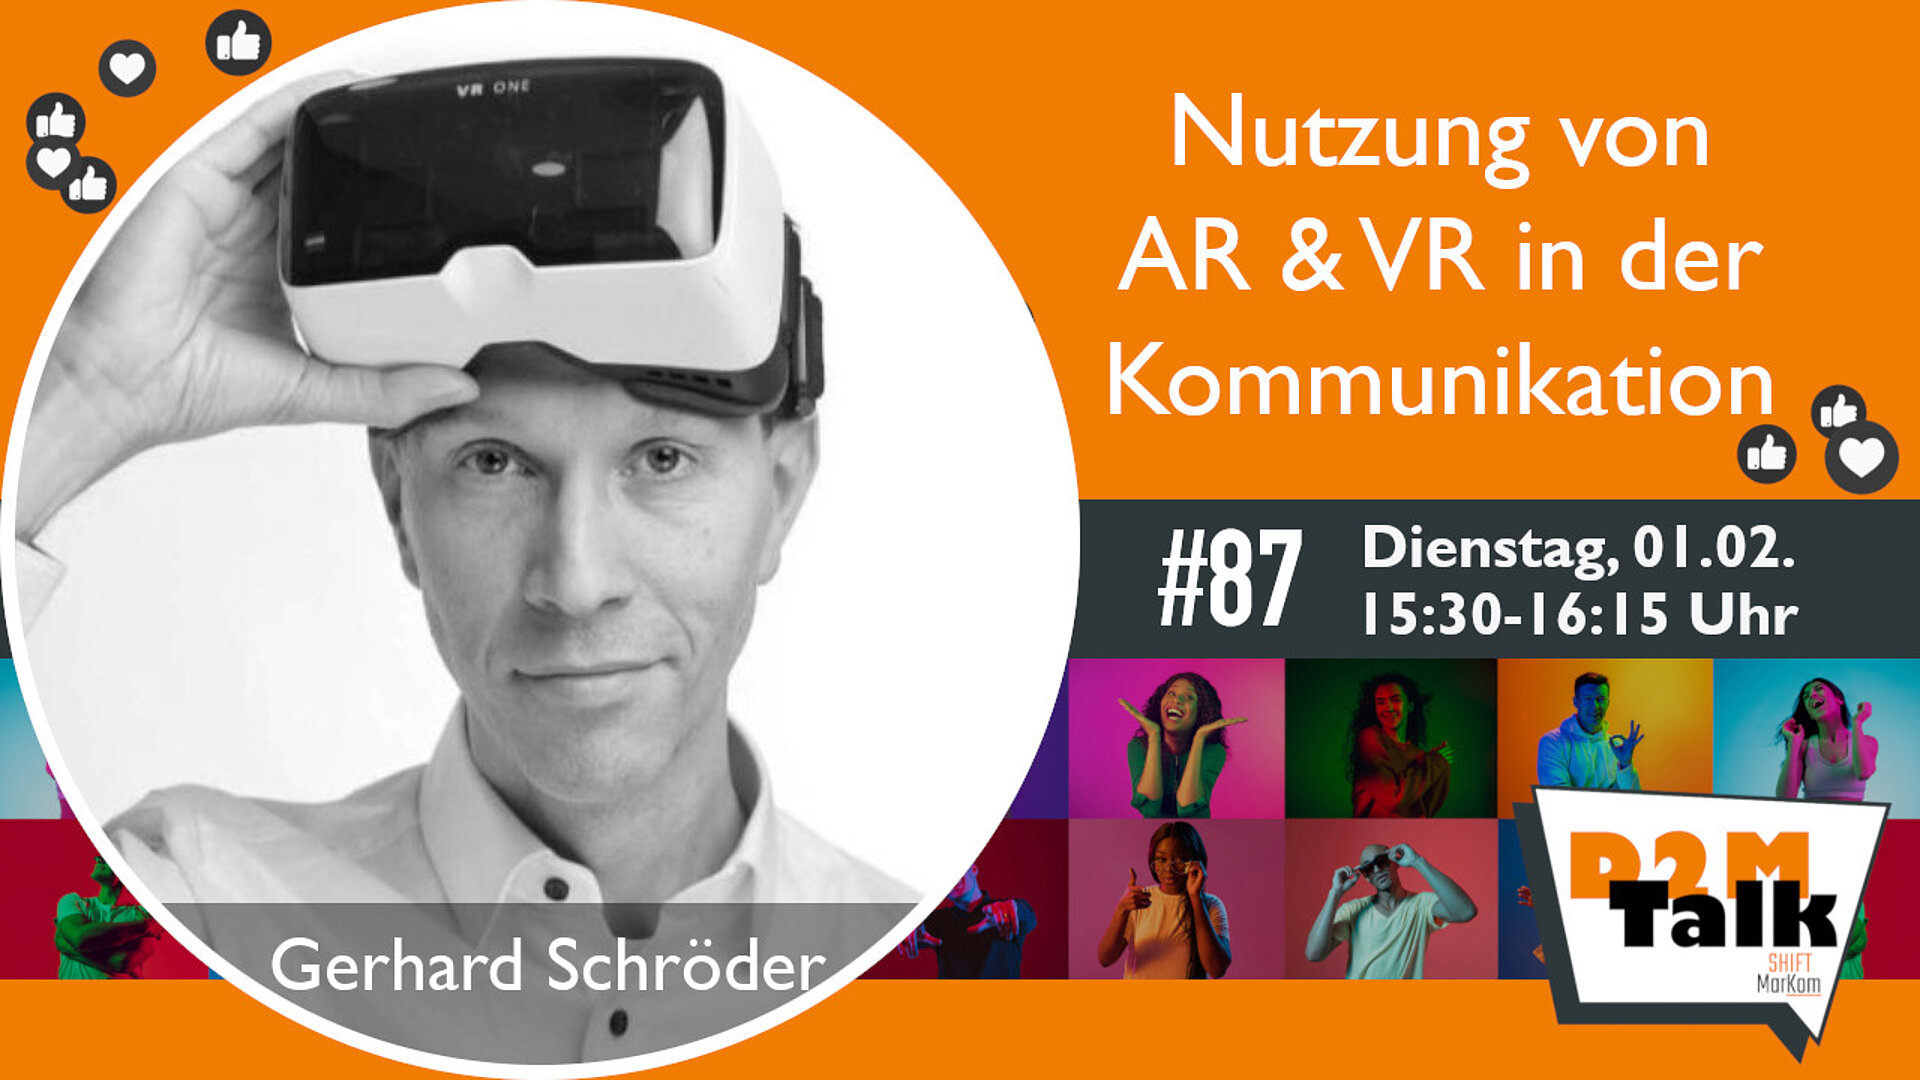 Im Gespräch mit Gerhard Schröder zur Nutzung von AR & VR in der Kommunikation